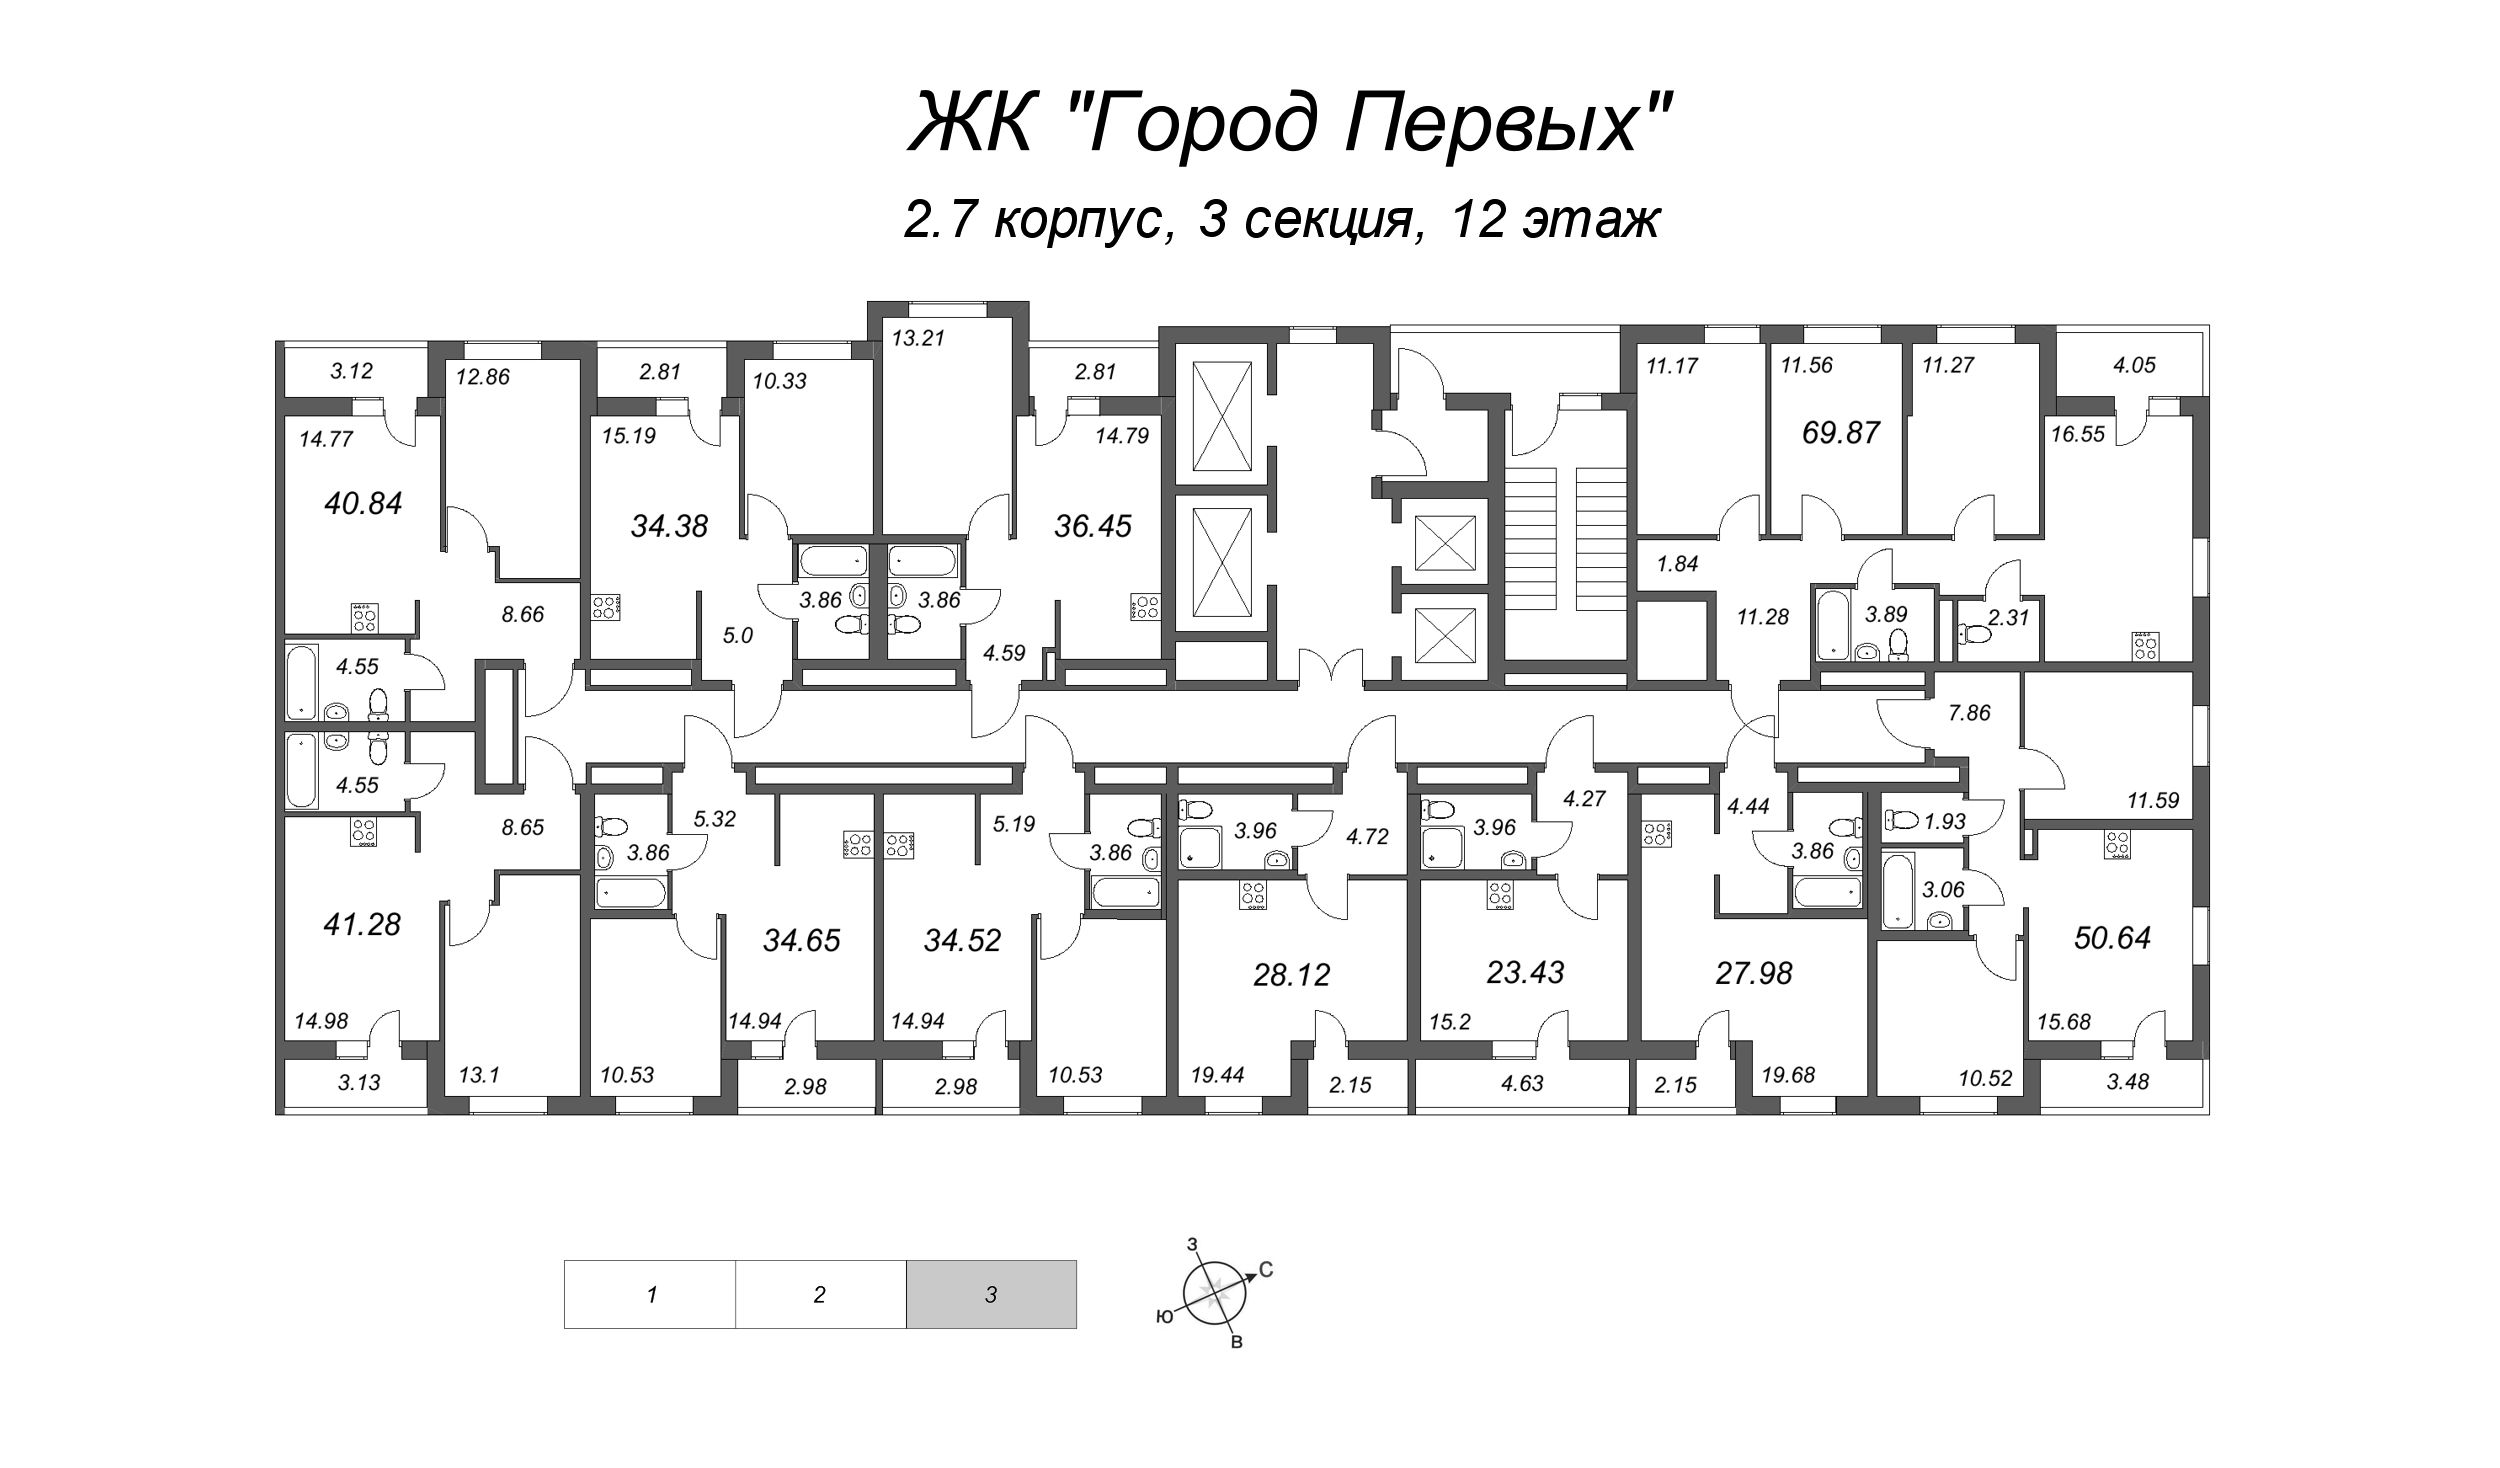 2-комнатная (Евро) квартира, 34.52 м² в ЖК "Город Первых" - планировка этажа